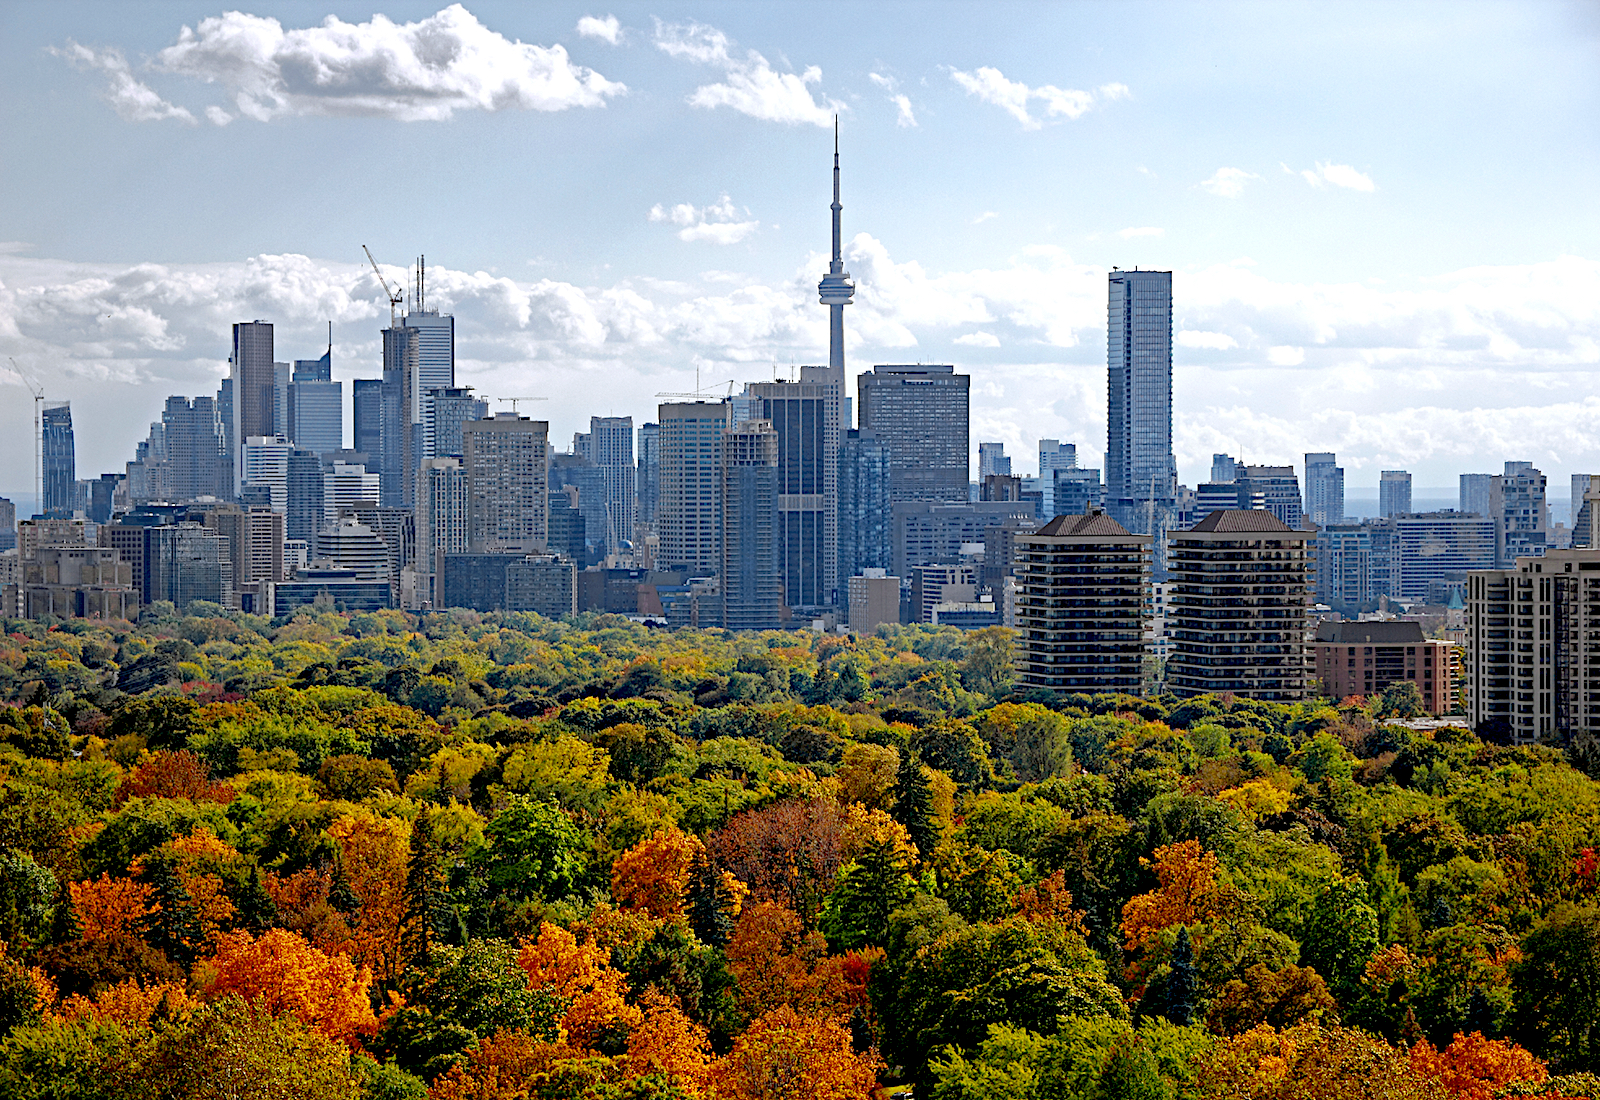 Downtown Toronto rises above its multicolor parkland